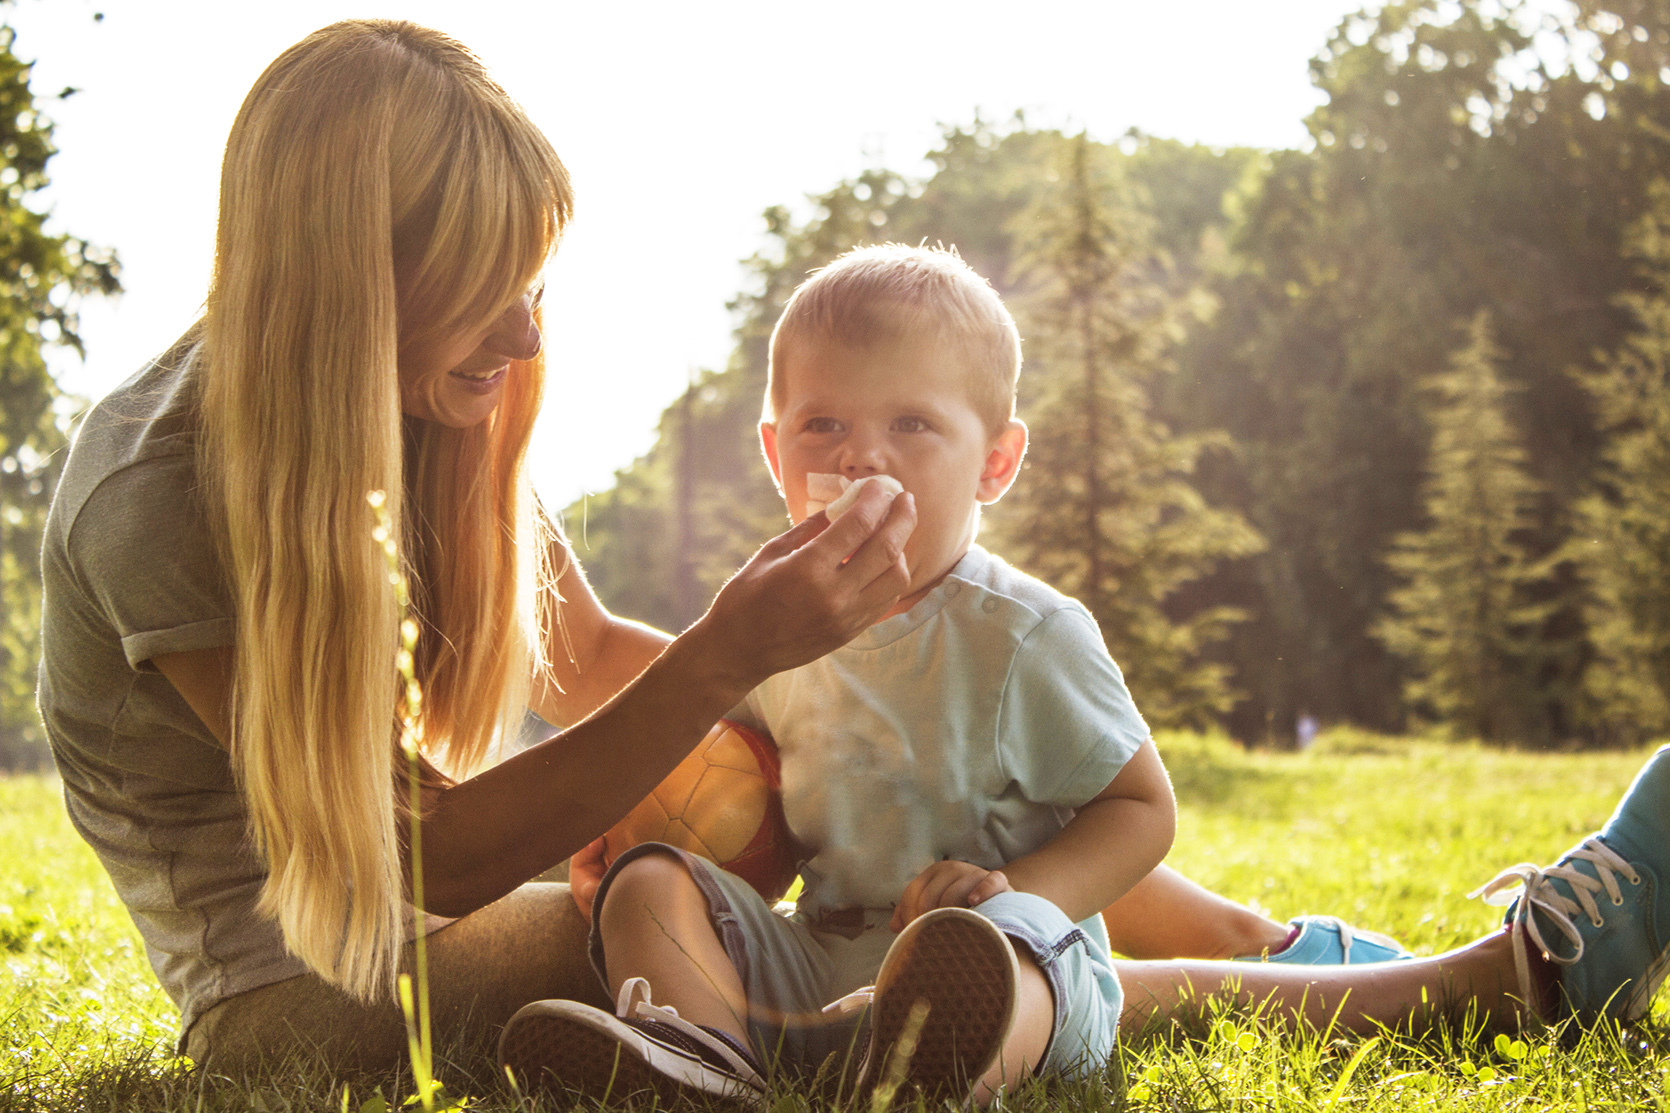 Dmuchanie nosa - jak nauczyć dziecko samodzielnie czyścić nos?